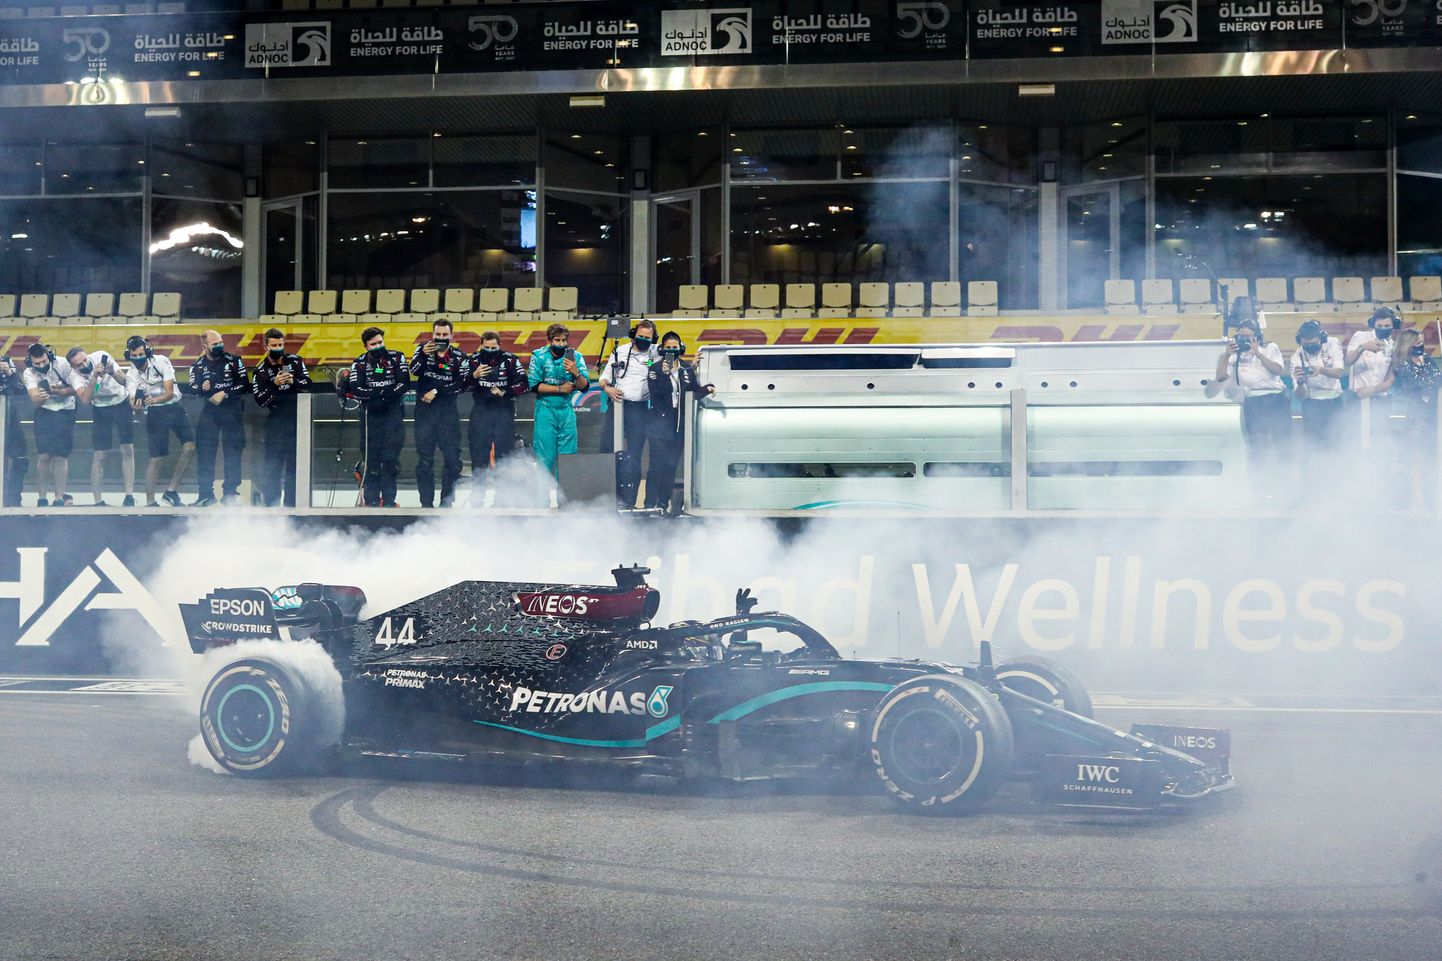 Mercedese meeskond aplodeerimas pärast Abu Dhabi GP-d Lewis Hamiltonile, kes tegi stardisirgel ausõõrikuid.